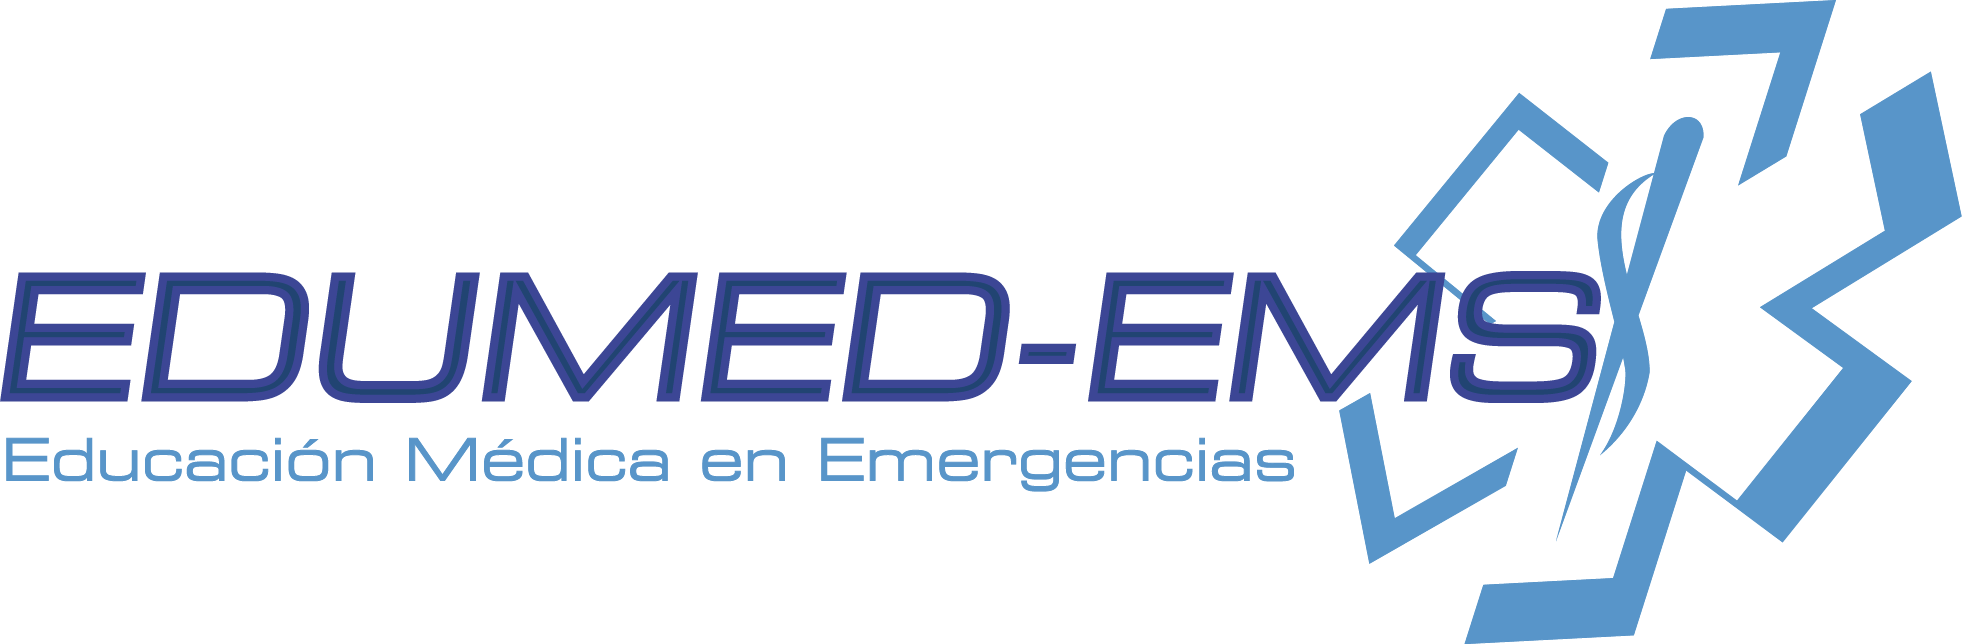 Edumed – Ems | Educación médica en emergencias